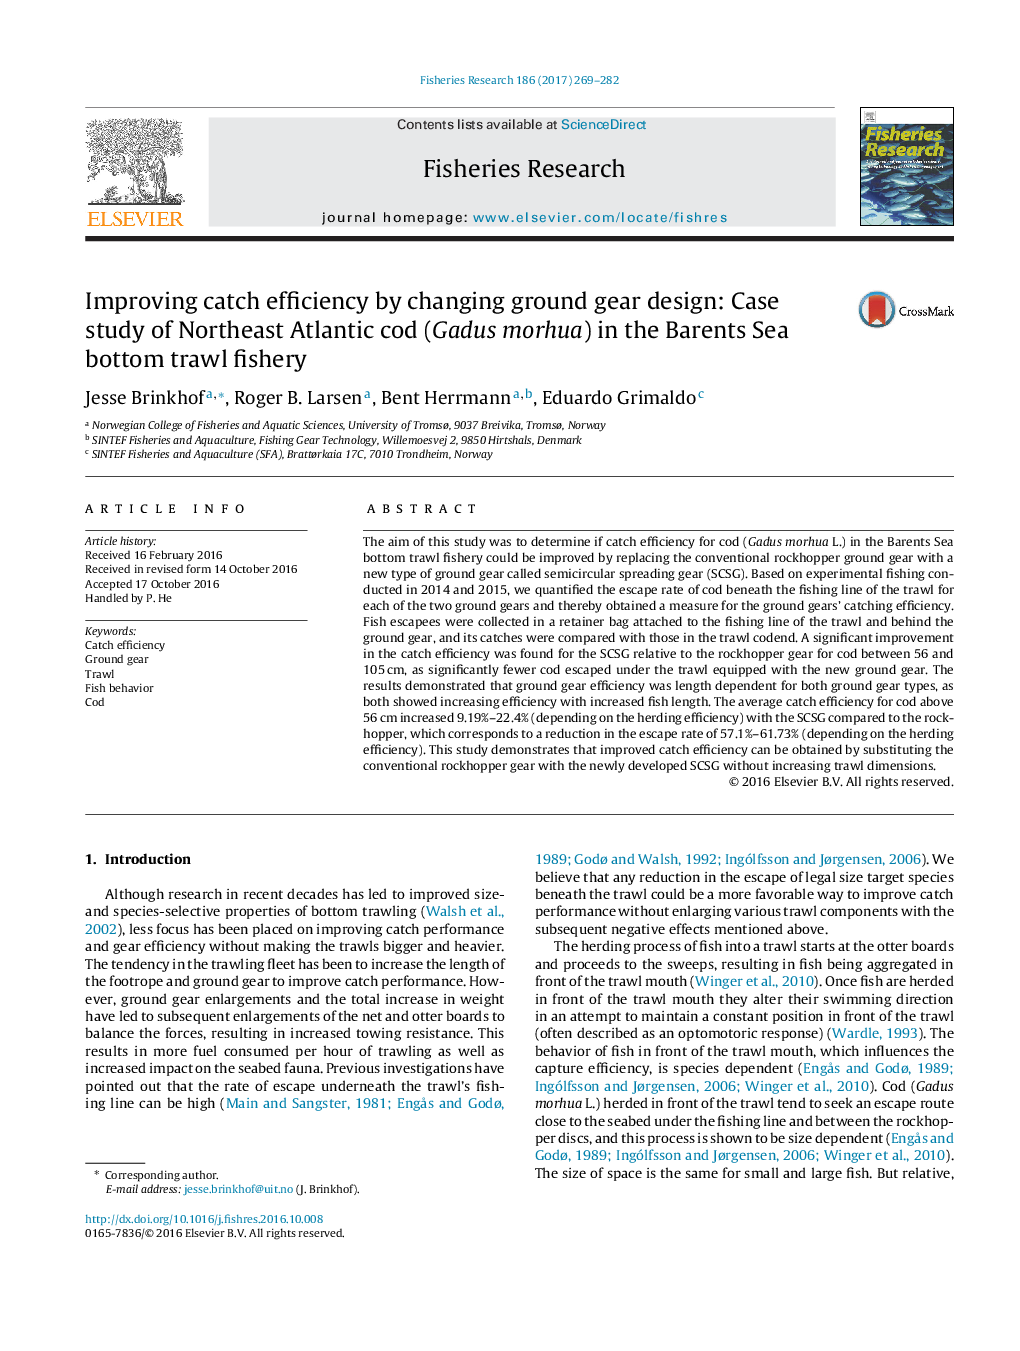 بهبود بهره وری صید با تغییر طراحی دنده زمین: مطالعه موردی از شمال شرقی اقیانوس اطلس COD (Gadus morhua) در دریای شیلات ترال پایین بارنتز 